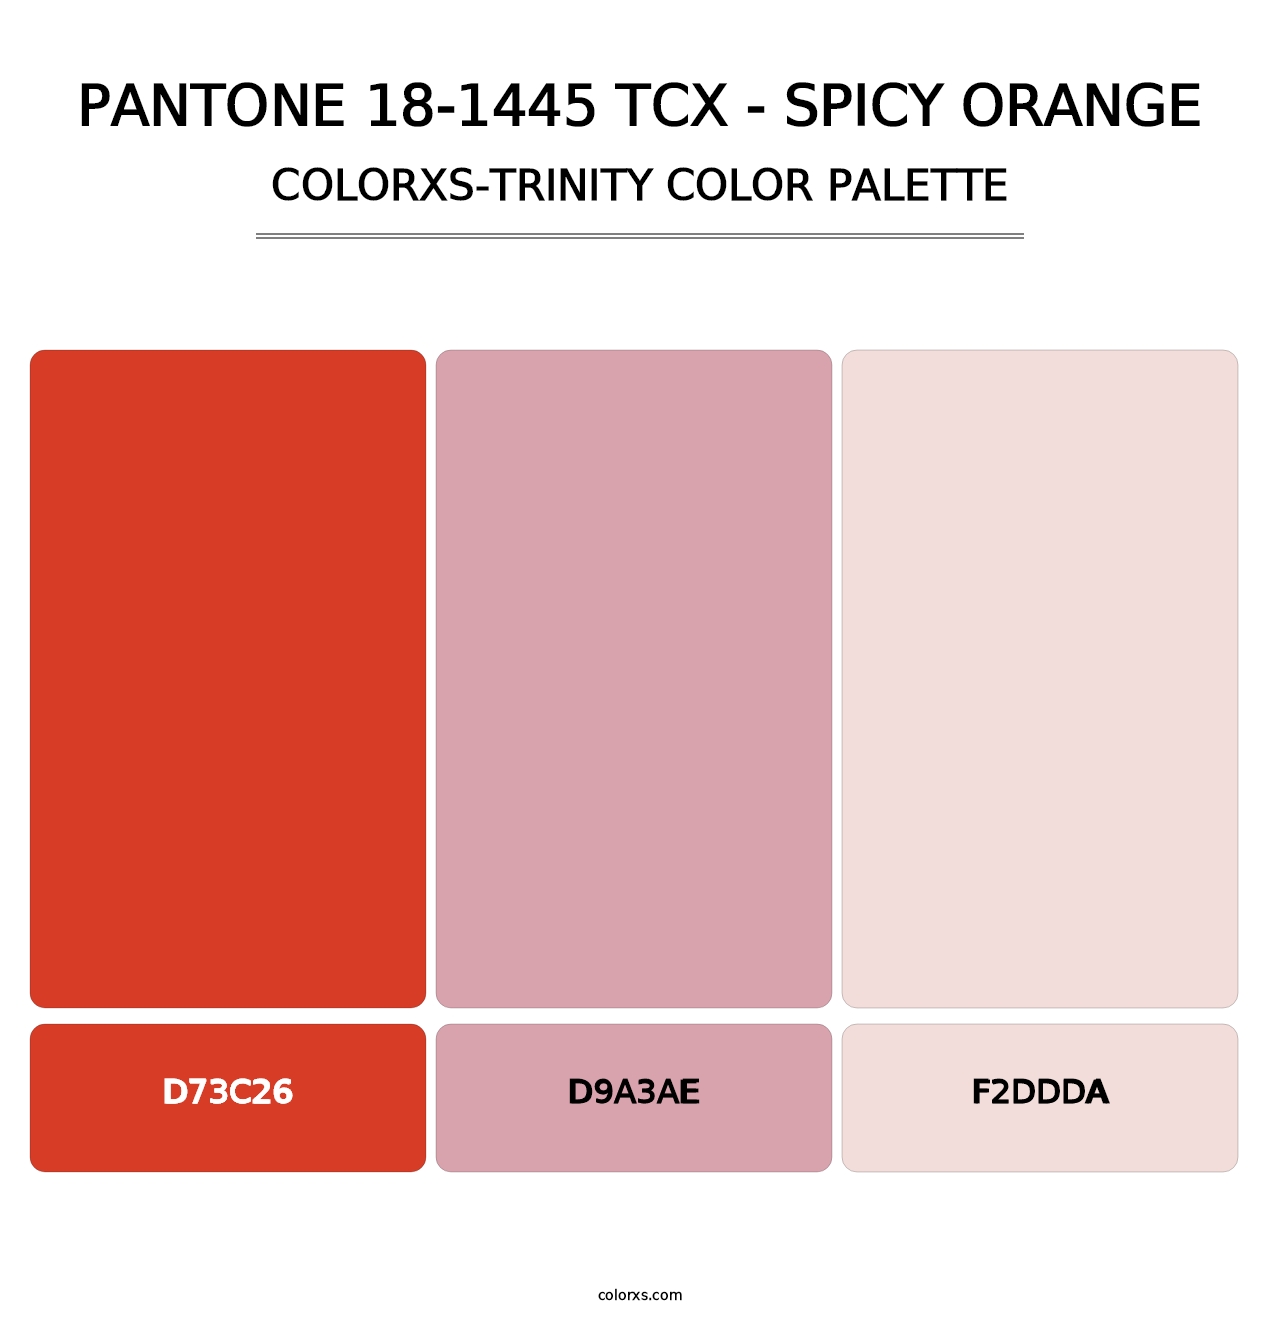 PANTONE 18-1445 TCX - Spicy Orange - Colorxs Trinity Palette